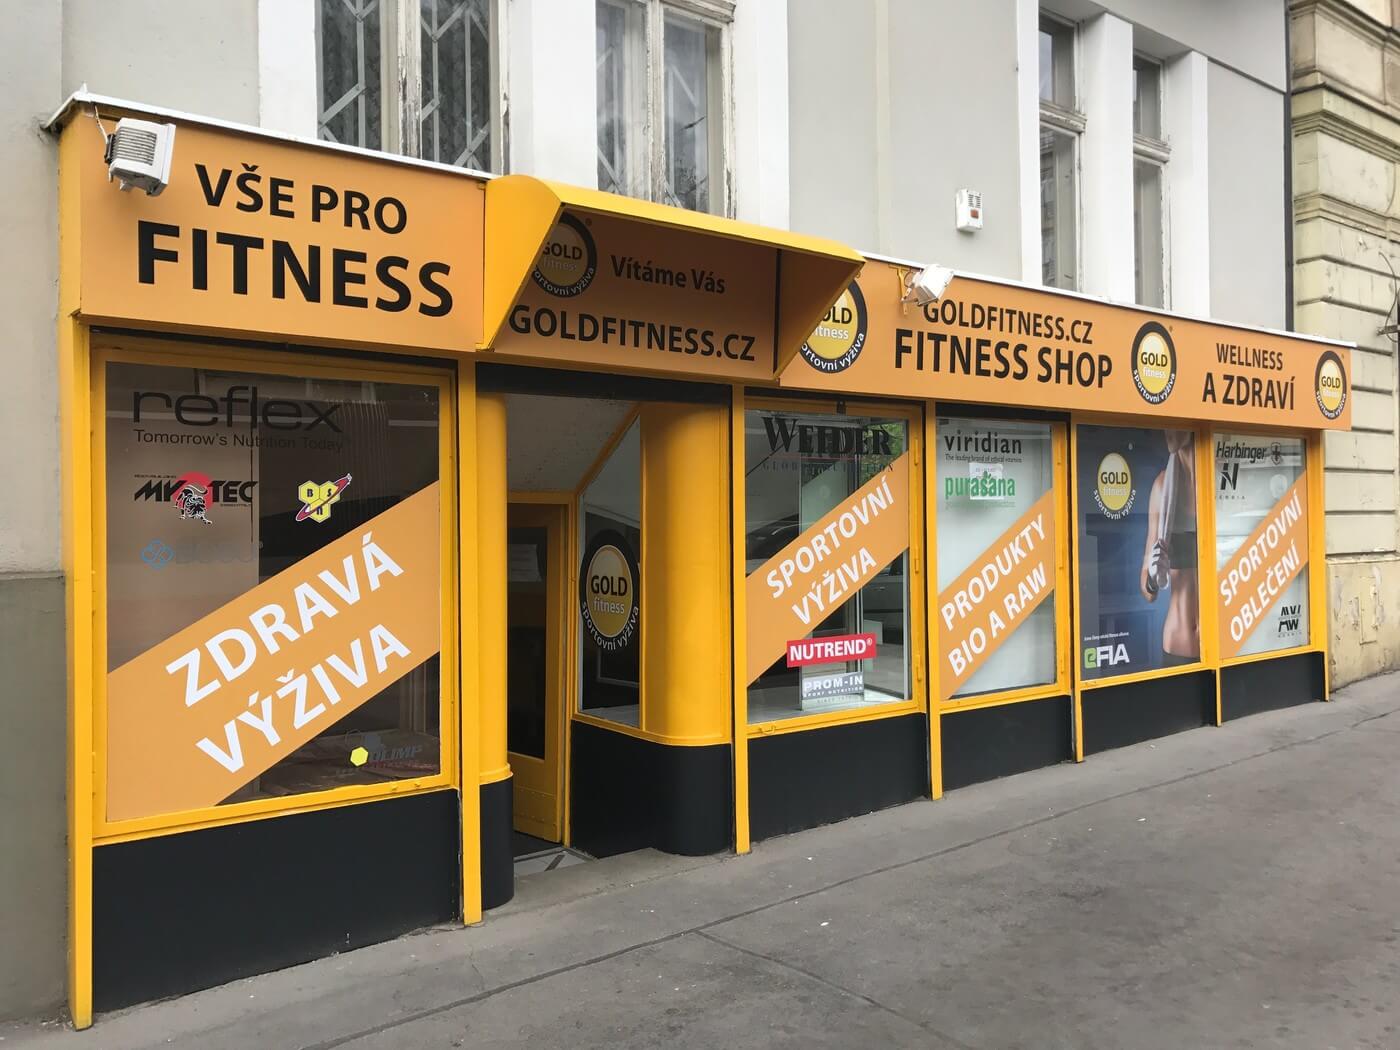 Představujeme členy eFIA.cz: Fitness obchod Goldfitness.cz (Praha, Vinohradská)- tradice a dobré jméno více než 27 let